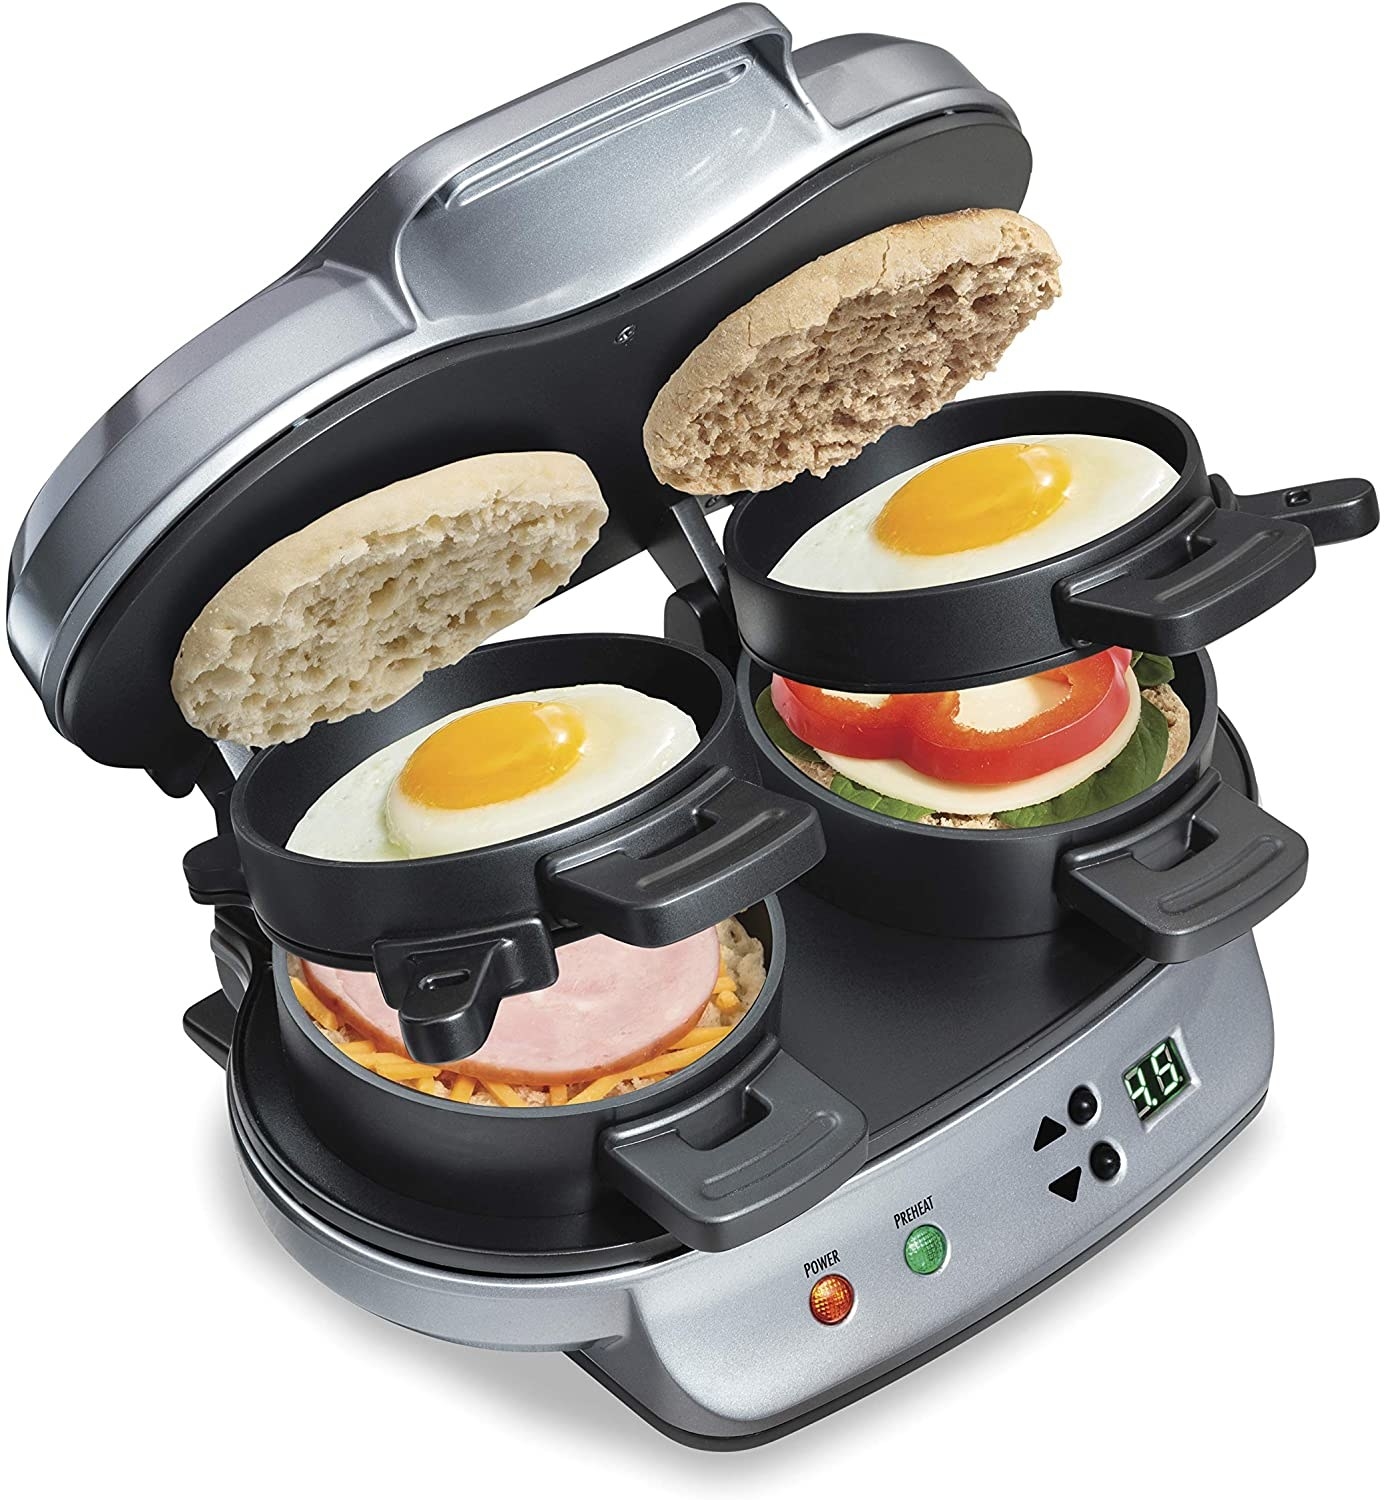 The dual breakfast sandwich maker